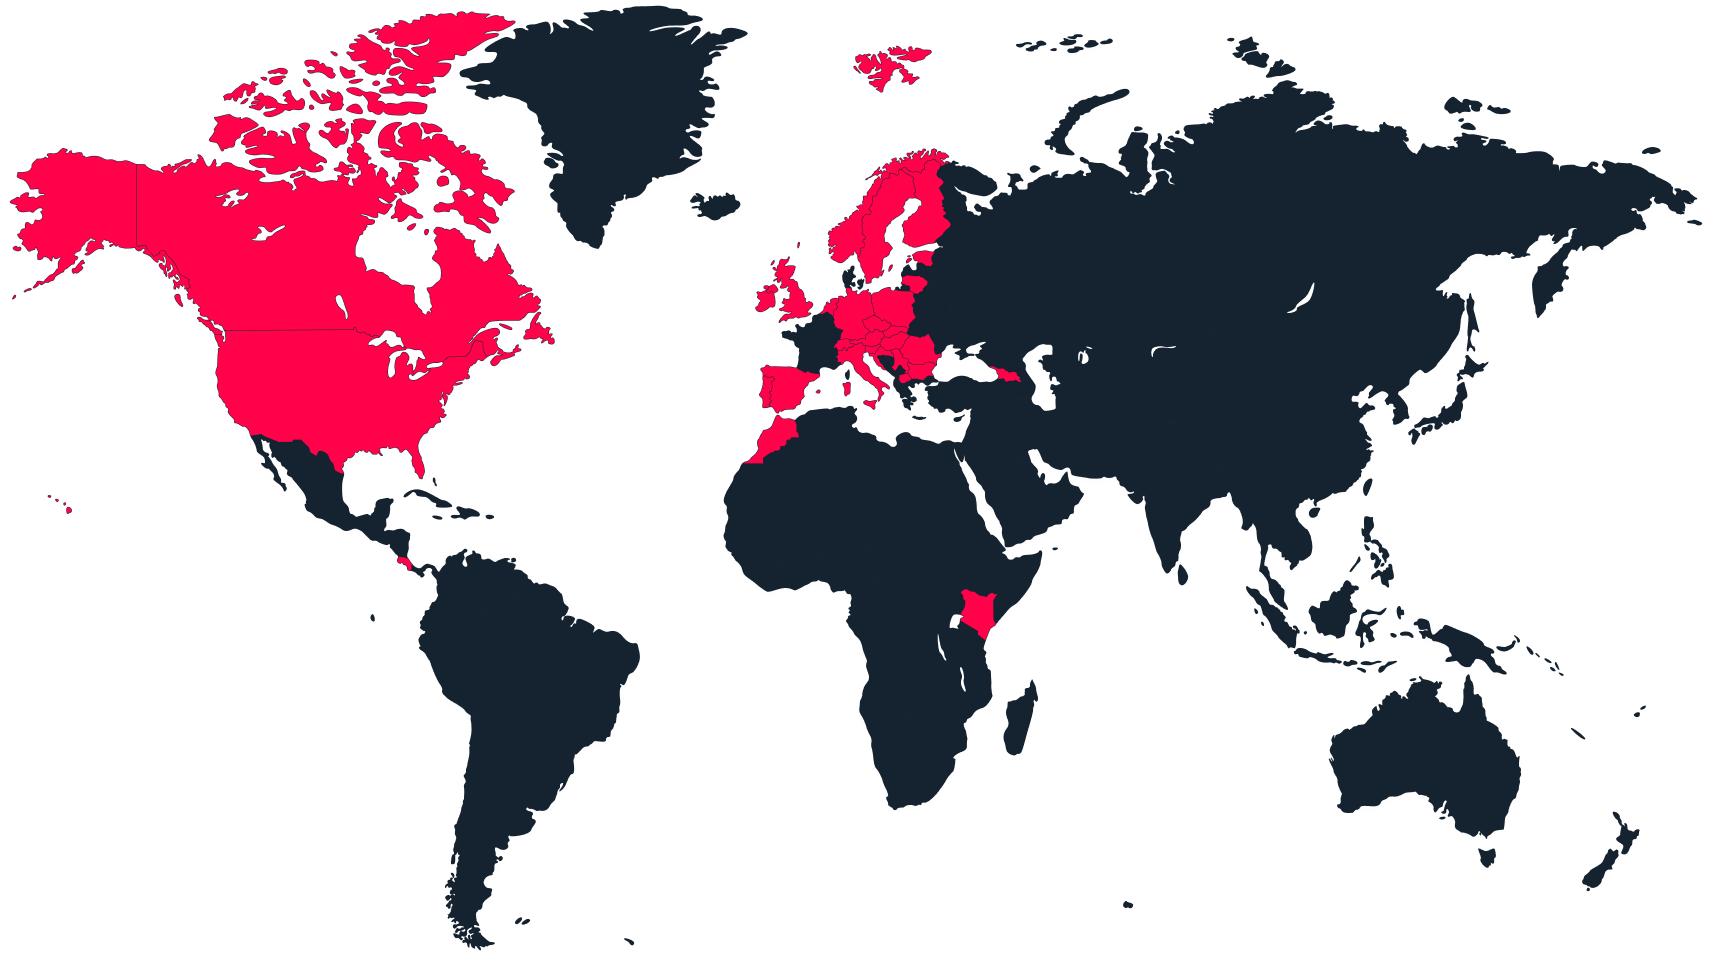 Világtérkép az aktív országokkal, piros színnel jelölve